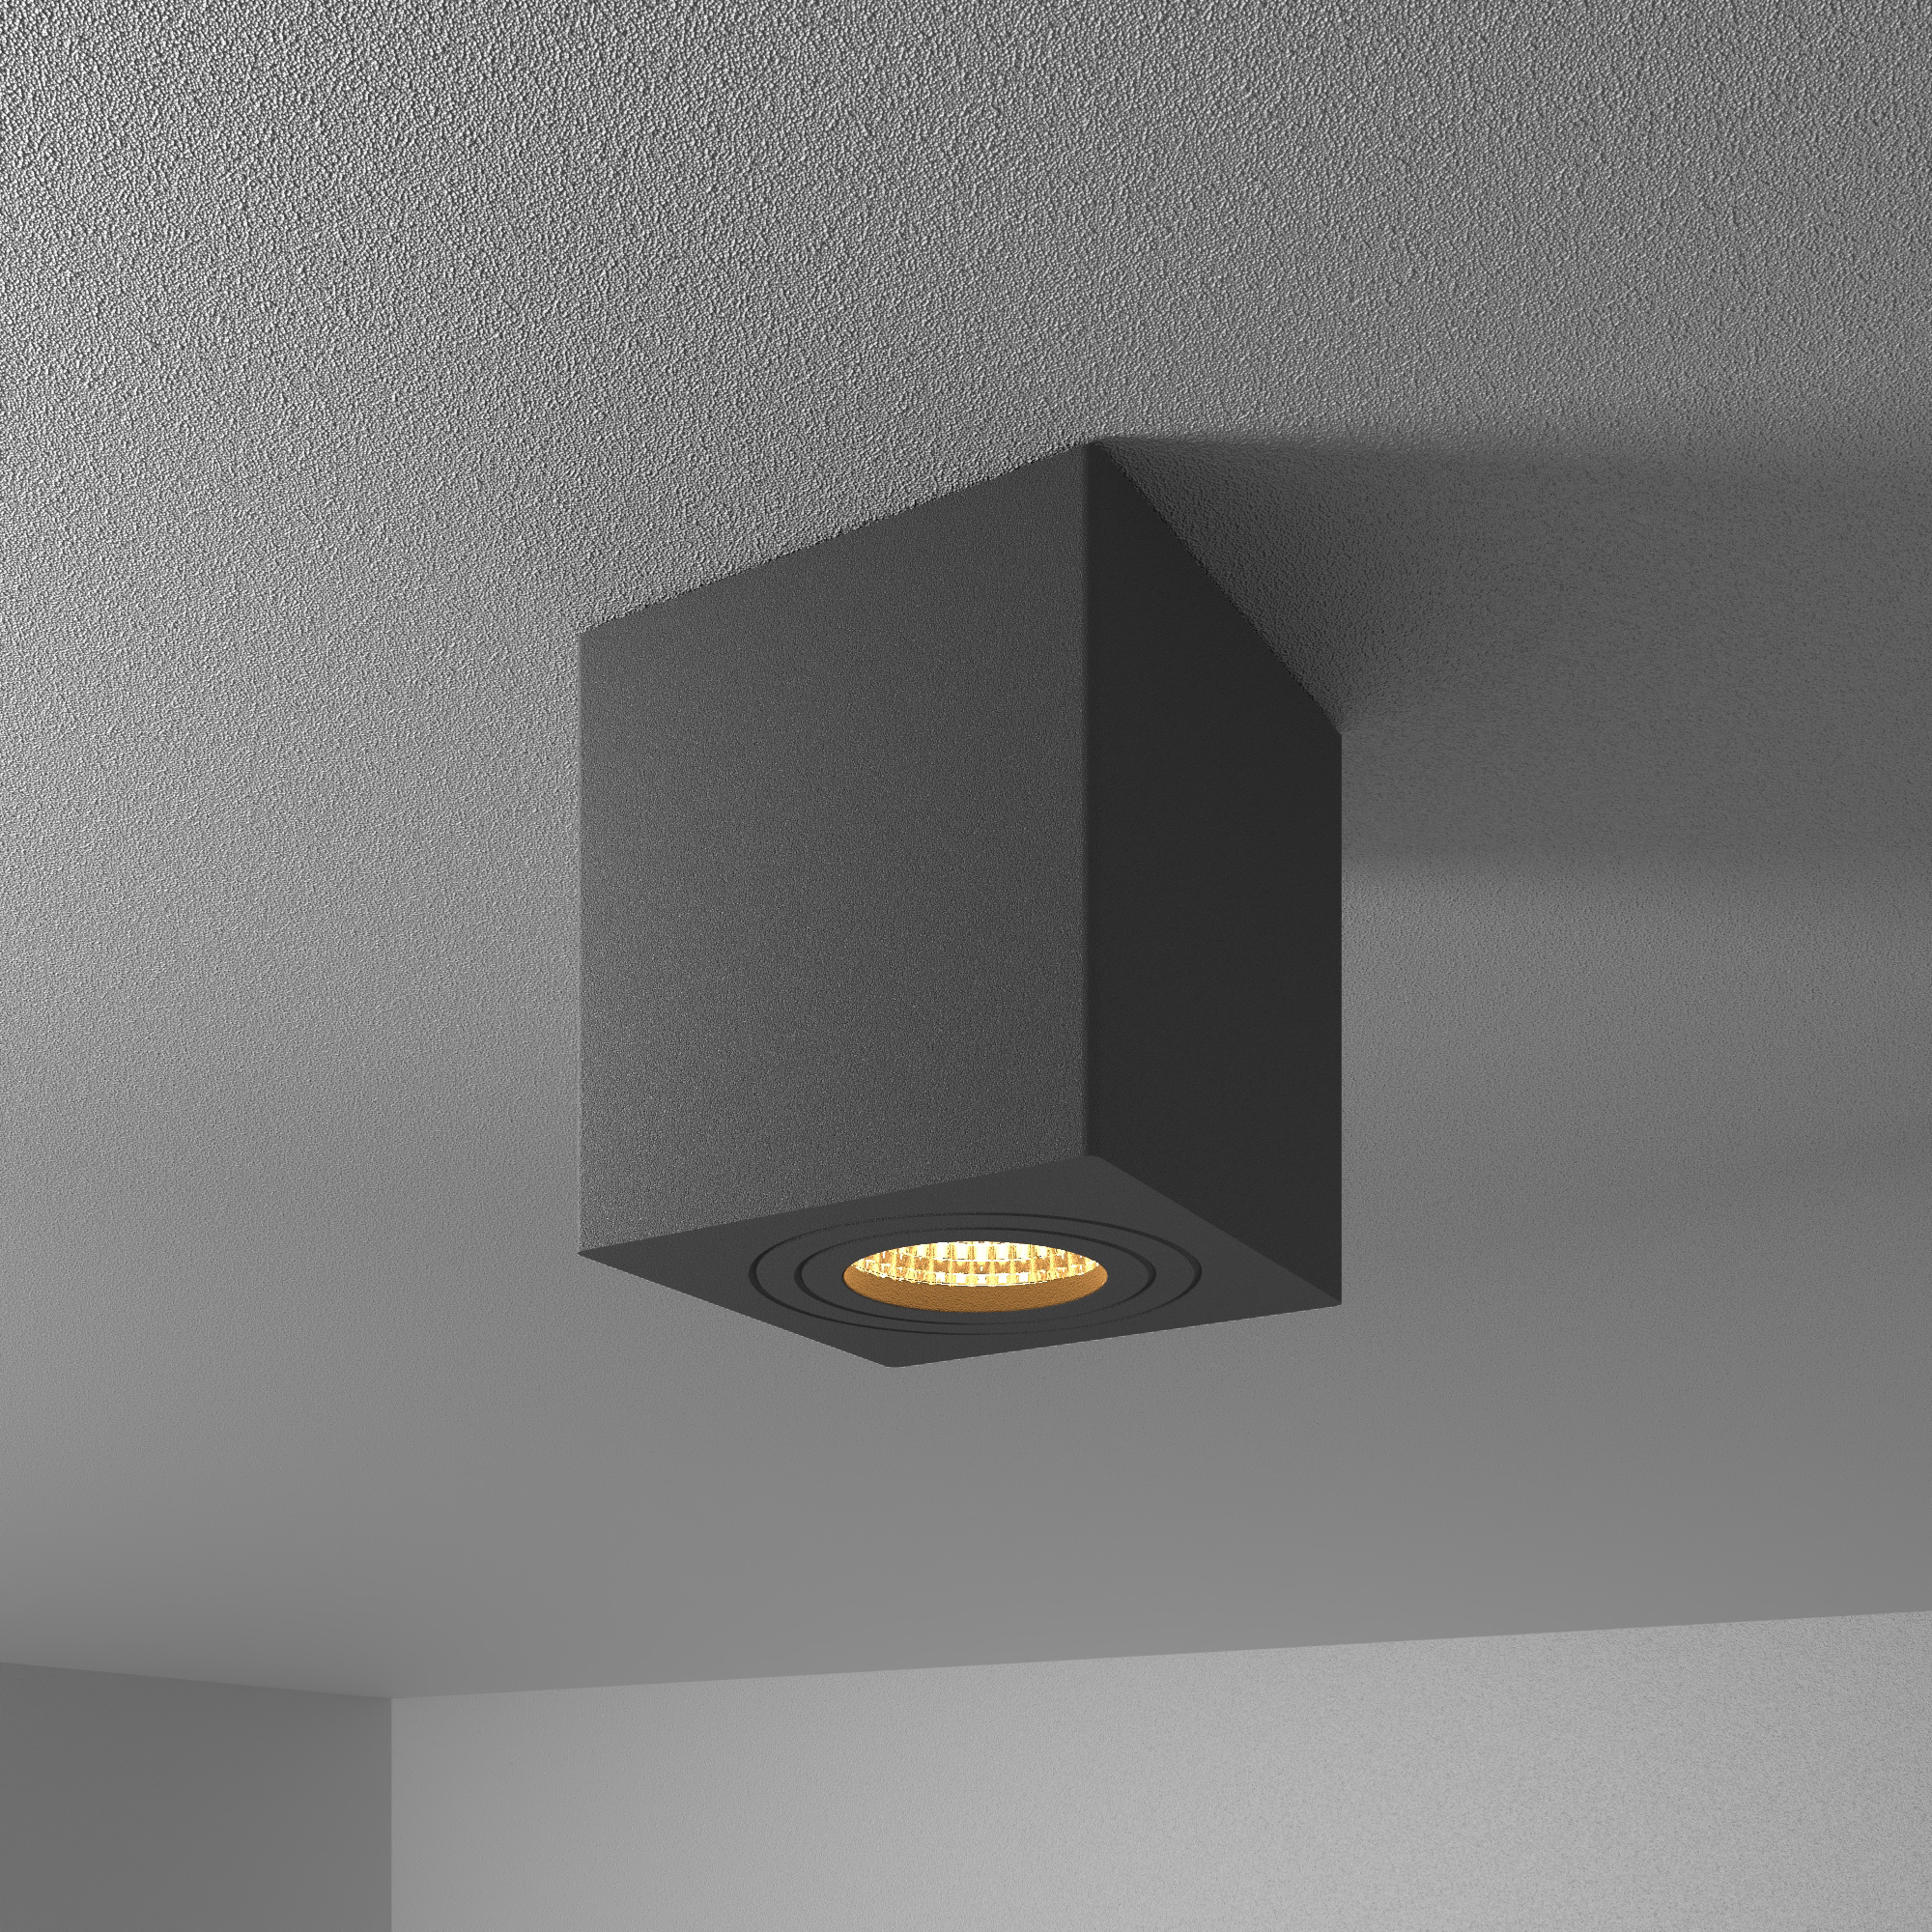 HOFTRONIC Gibbon LED opbouw plafondspot - Vierkant - IP65 waterdicht - 2700K Warm wit lichtkleur GU1